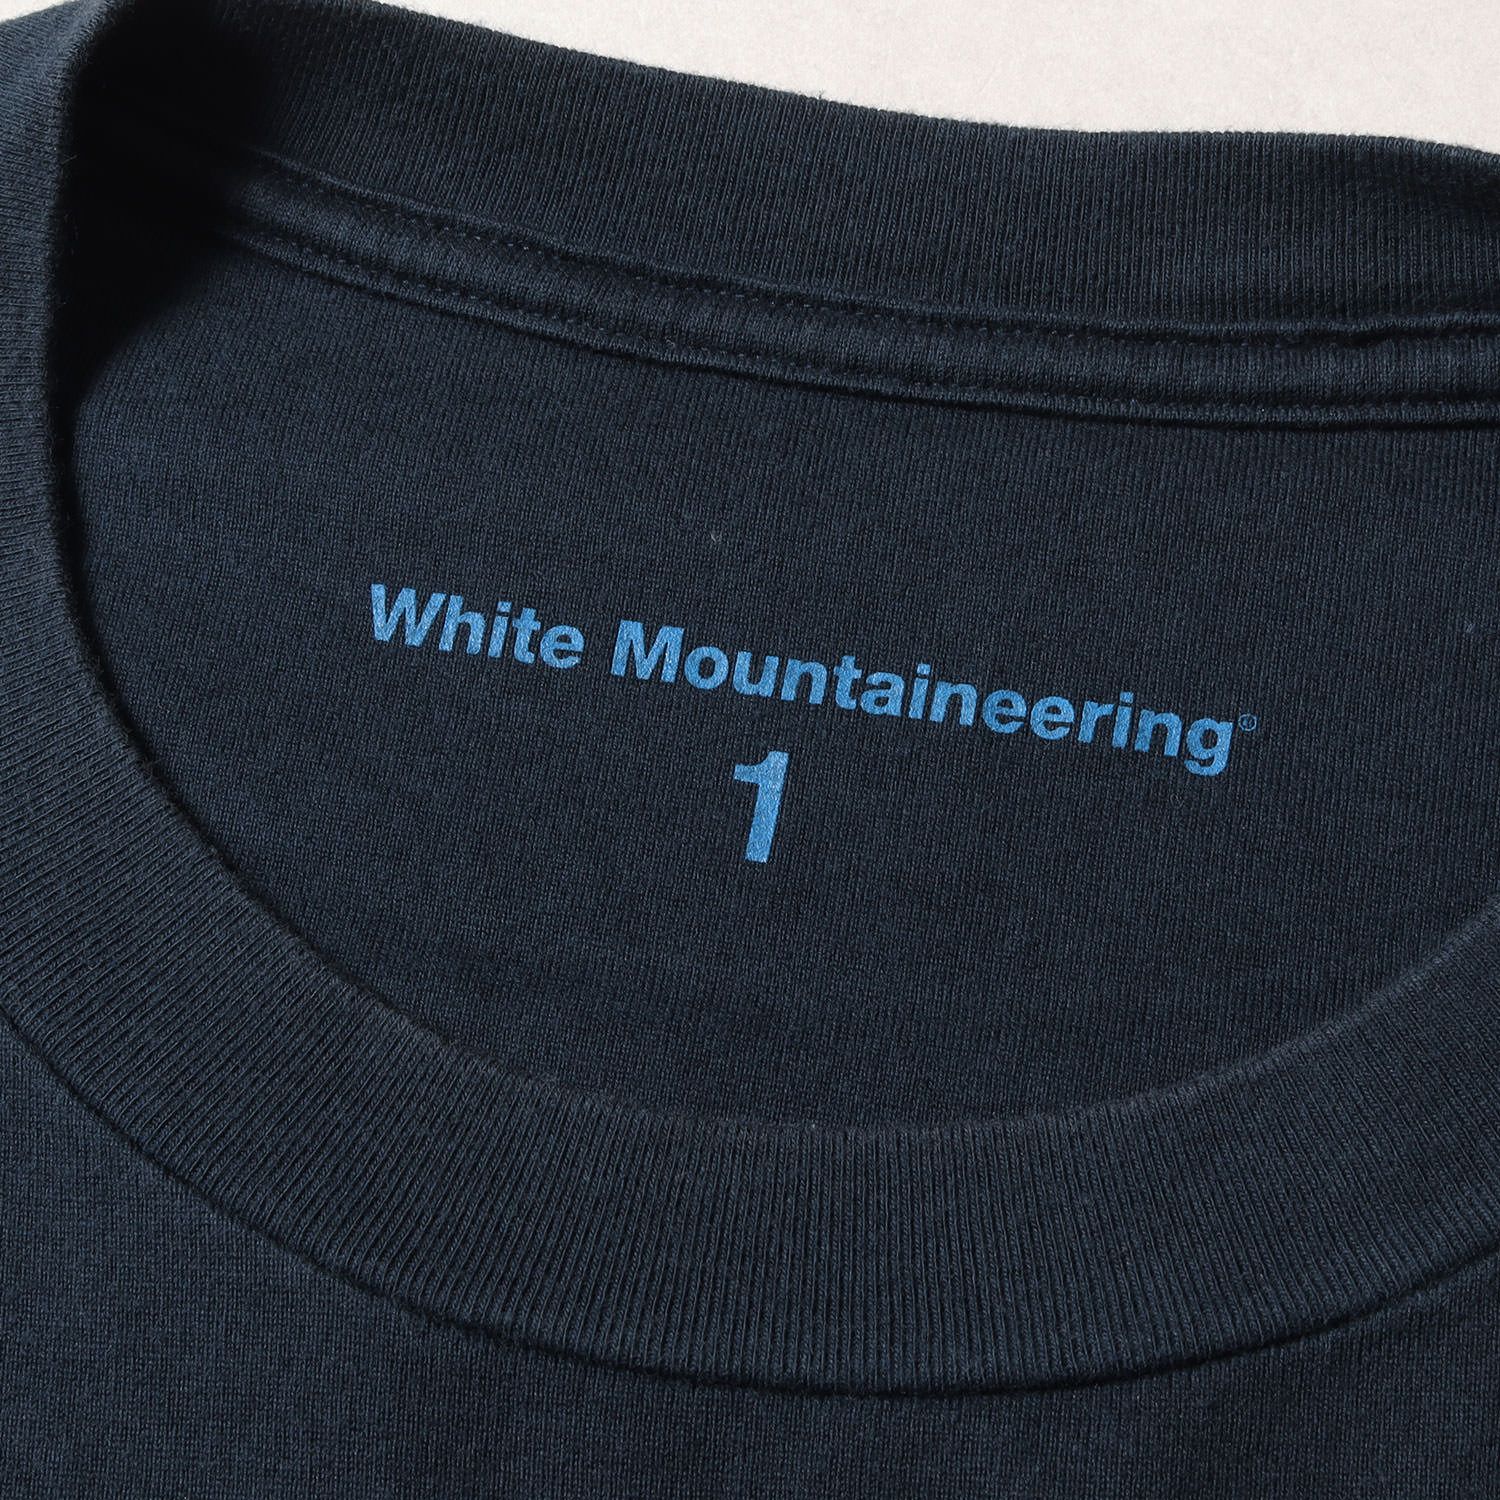 White Mountaineering ホワイトマウンテニアリング Tシャツ サイズ:1 タイダイ柄 ポケット WM2171518 半袖 クルーネック 21SS ネイビー マルチカラー トップス カットソー ブランド カジュアル シンプル 日本製【メンズ】